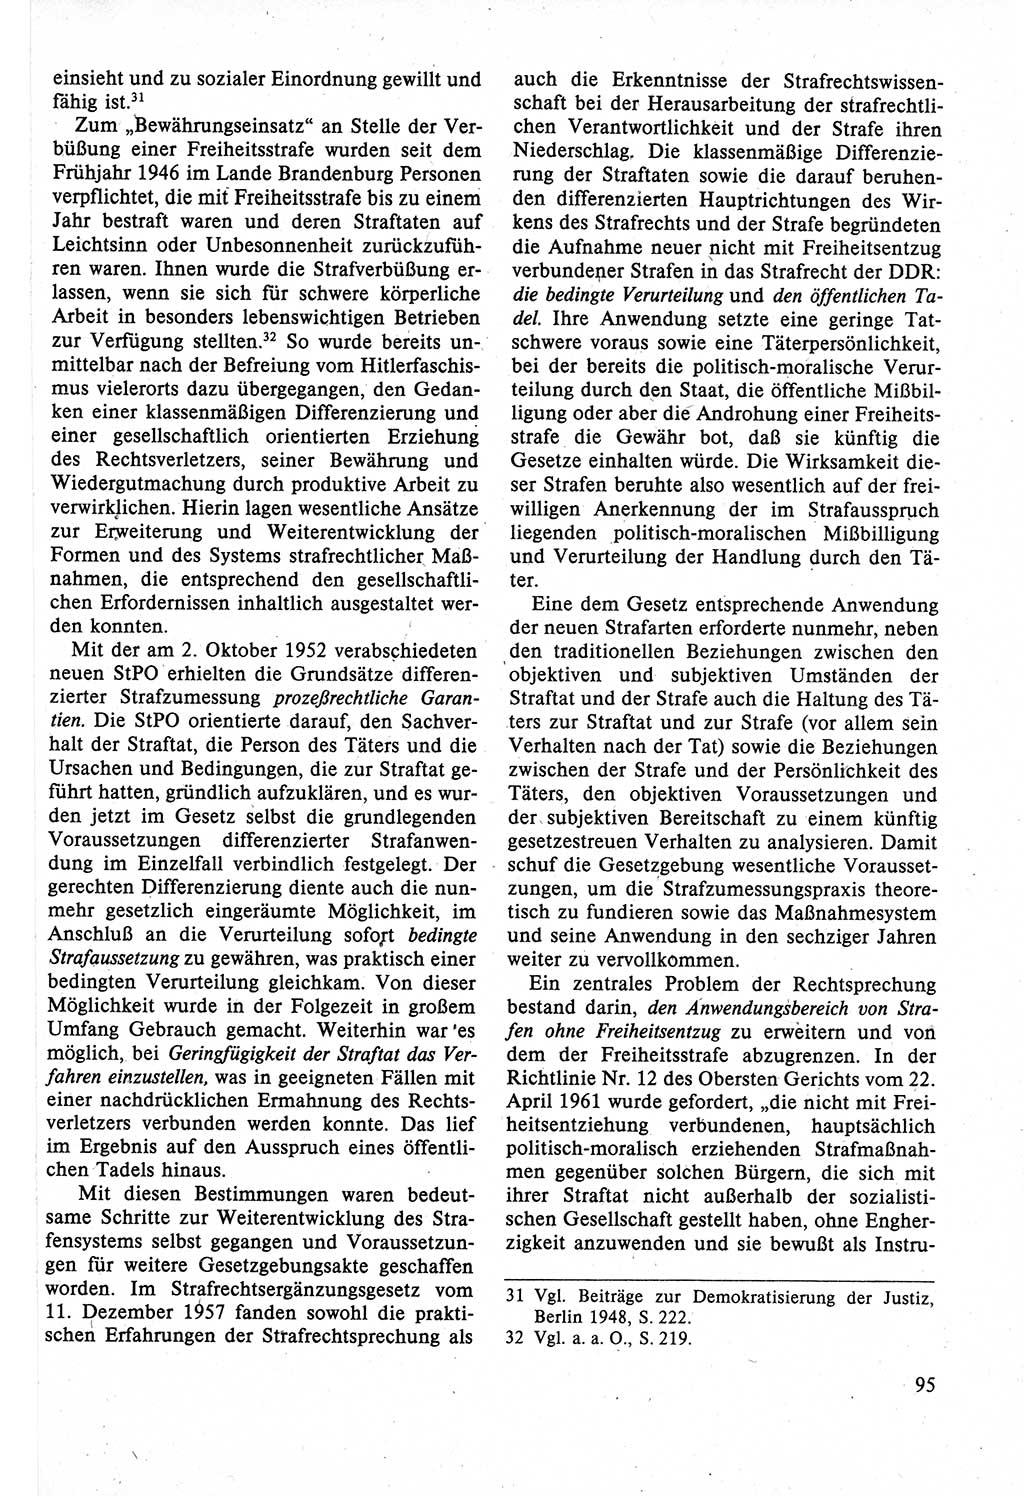 Strafrecht der DDR (Deutsche Demokratische Republik), Lehrbuch 1988, Seite 95 (Strafr. DDR Lb. 1988, S. 95)